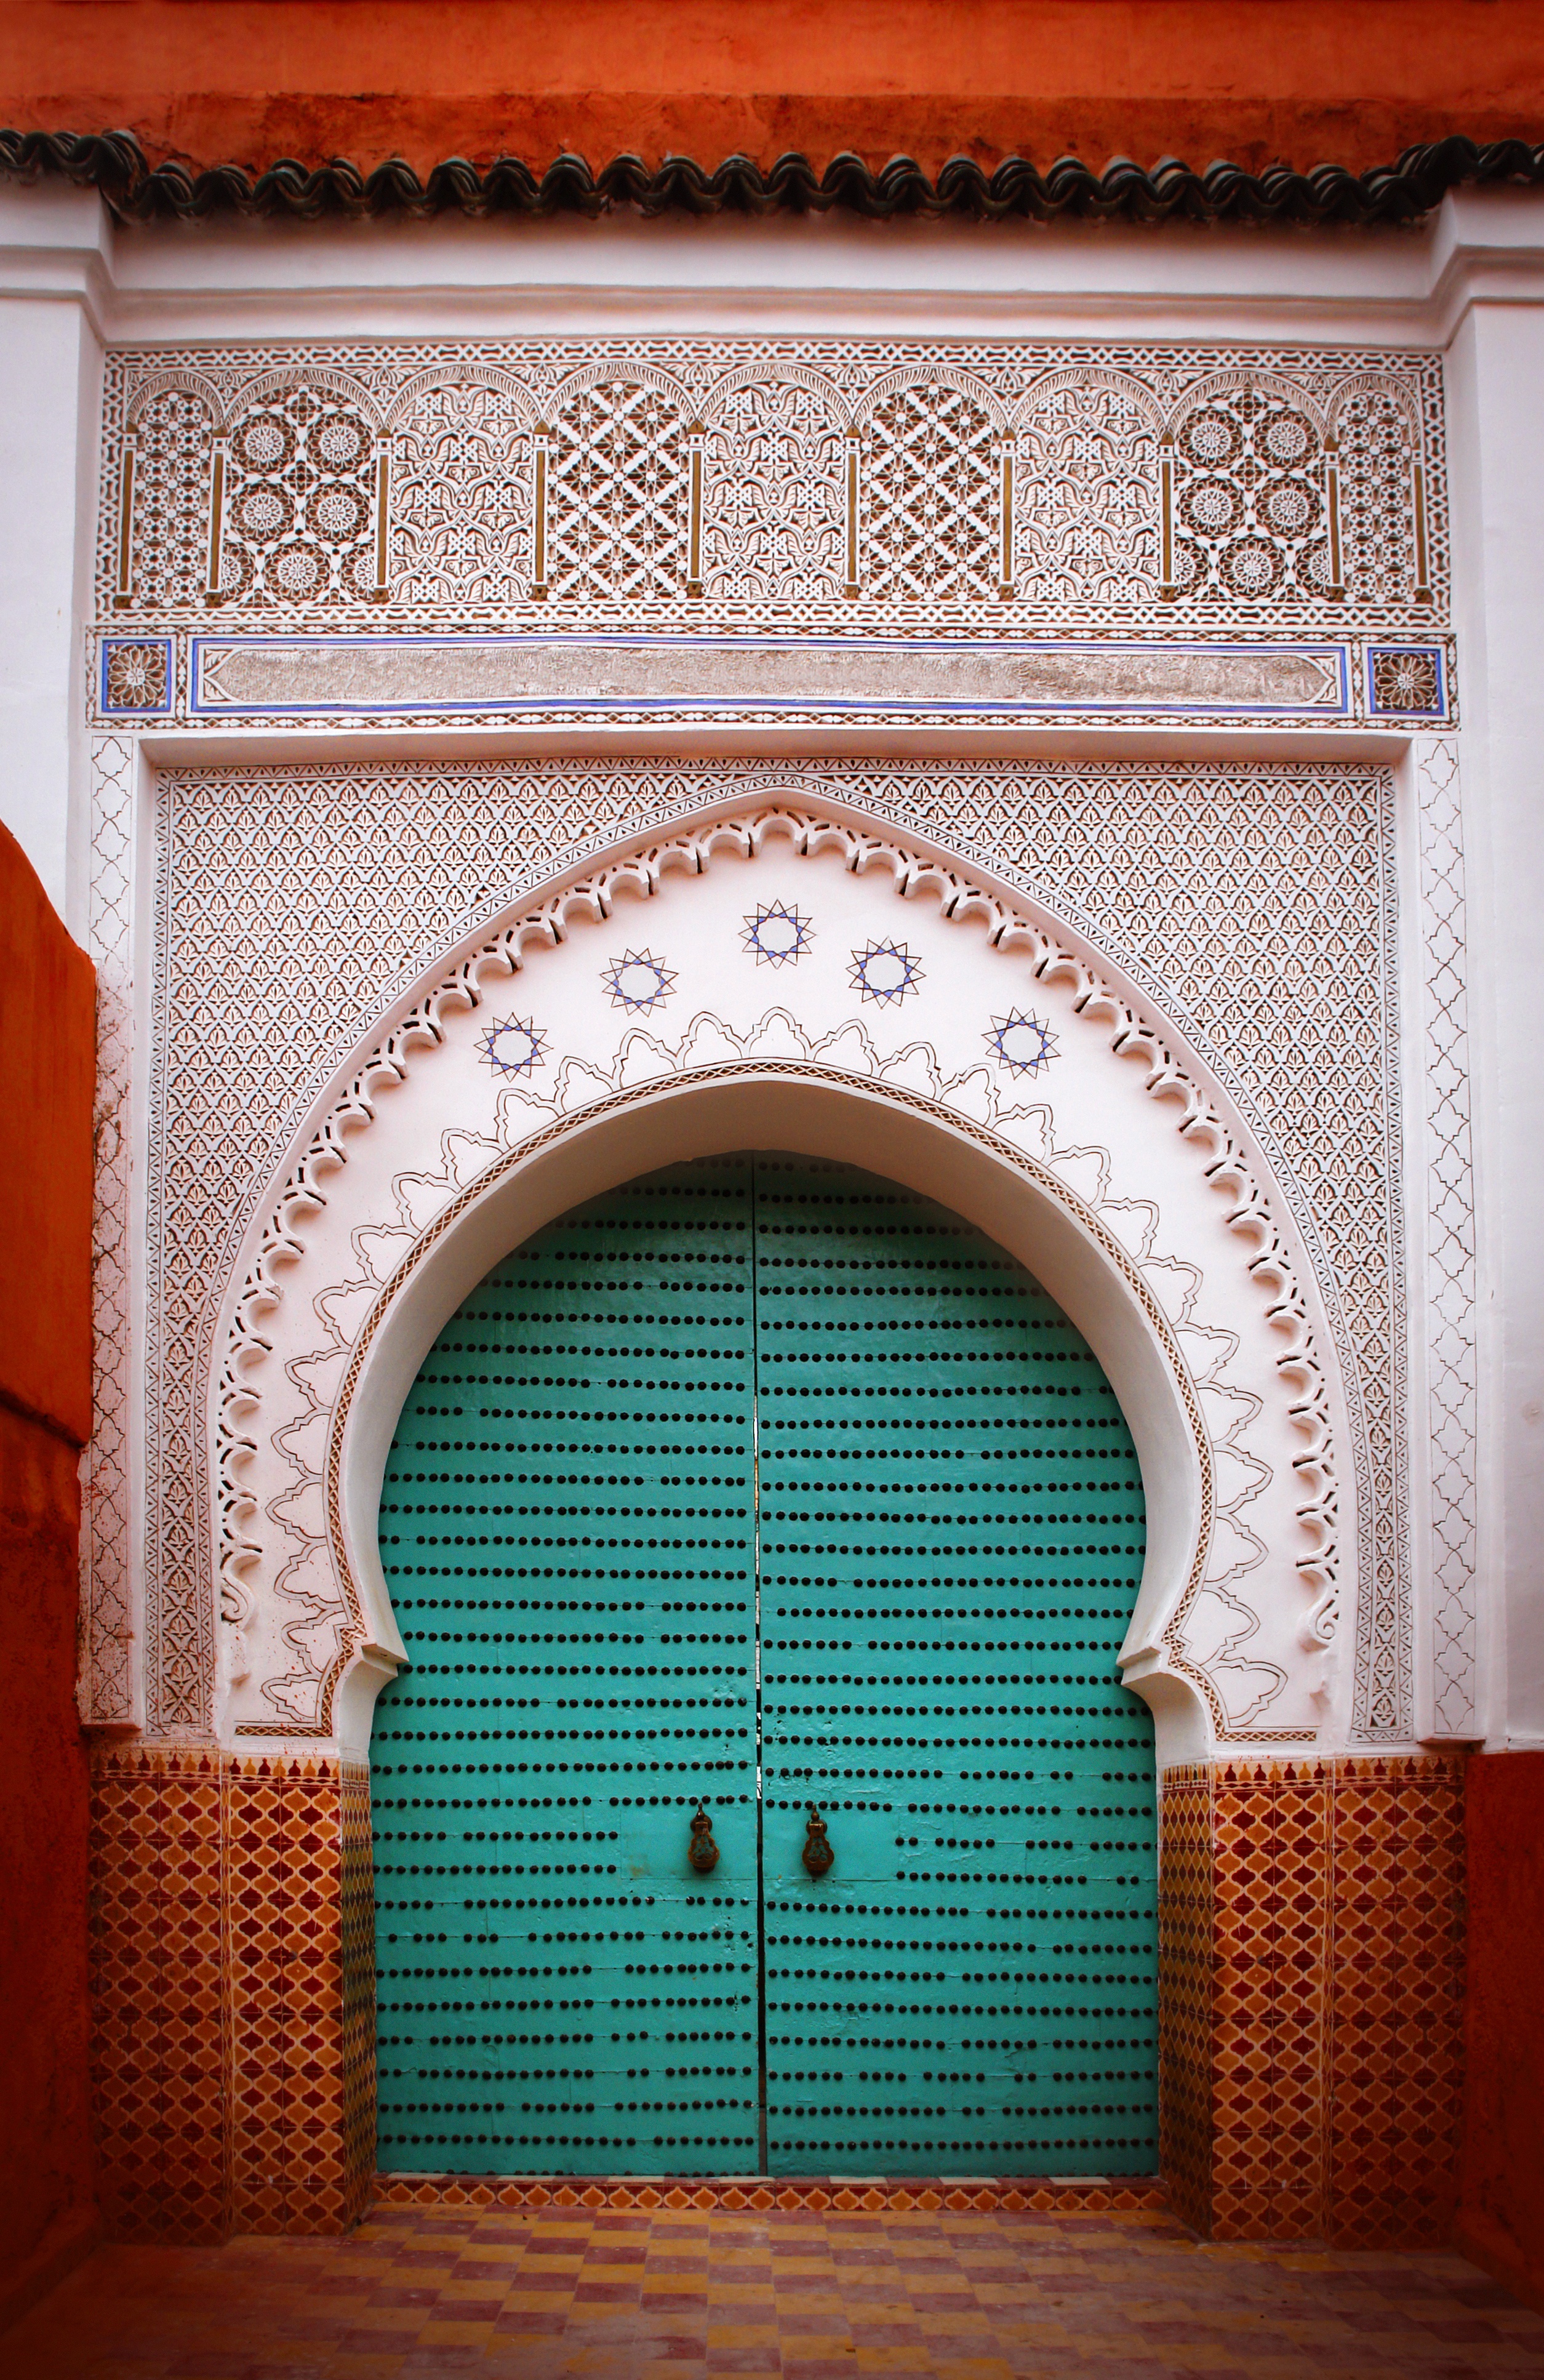 Marrocos.jpg